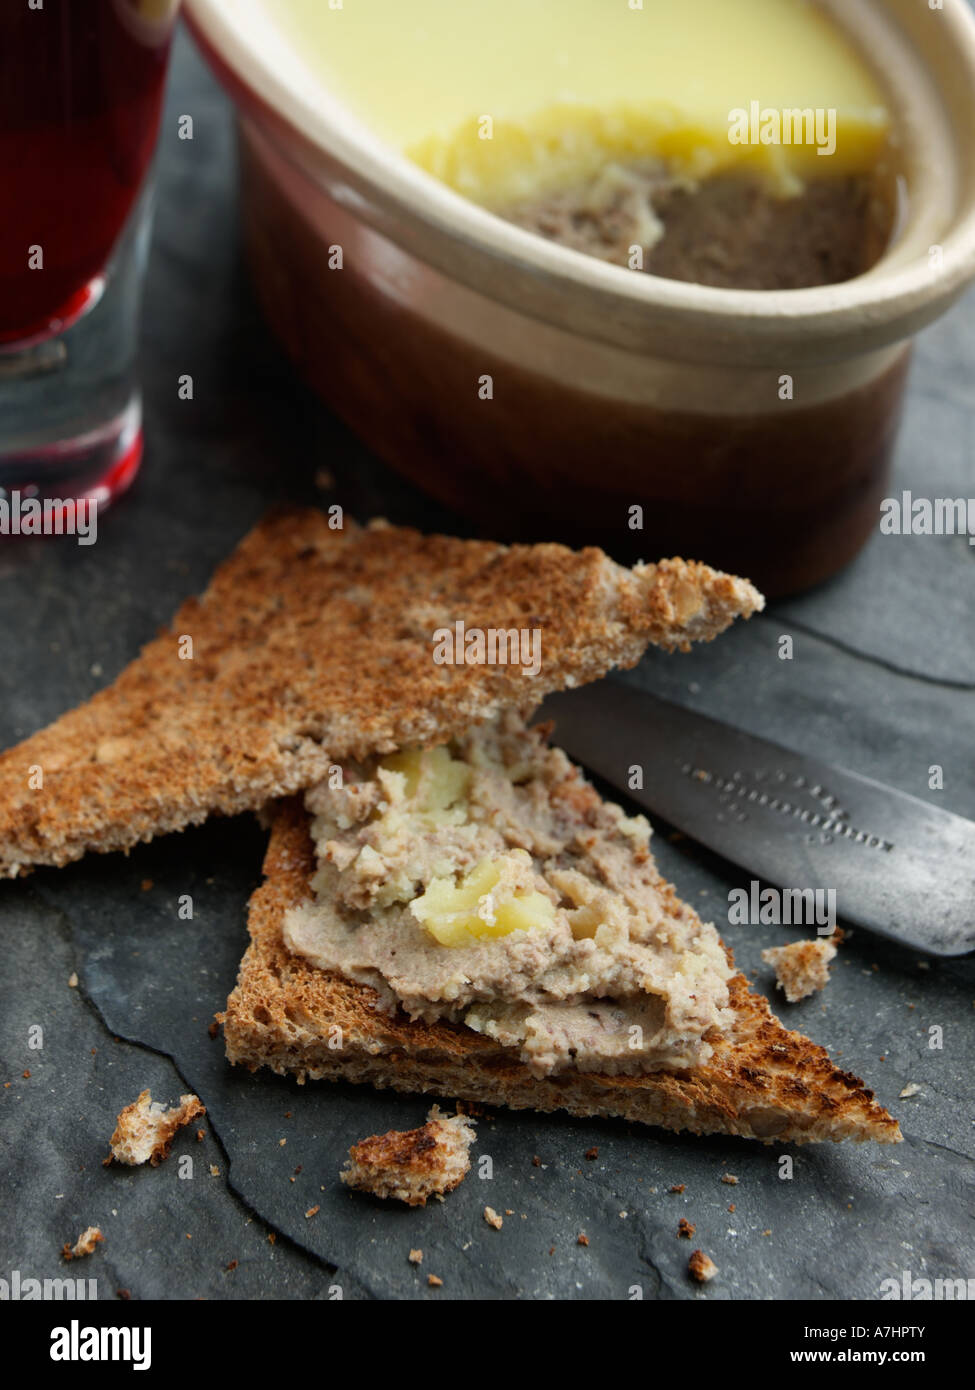 Ein Gericht aus Huhn Leber Pastete mit Toast und Wein redaktionelle Essen Stockfoto